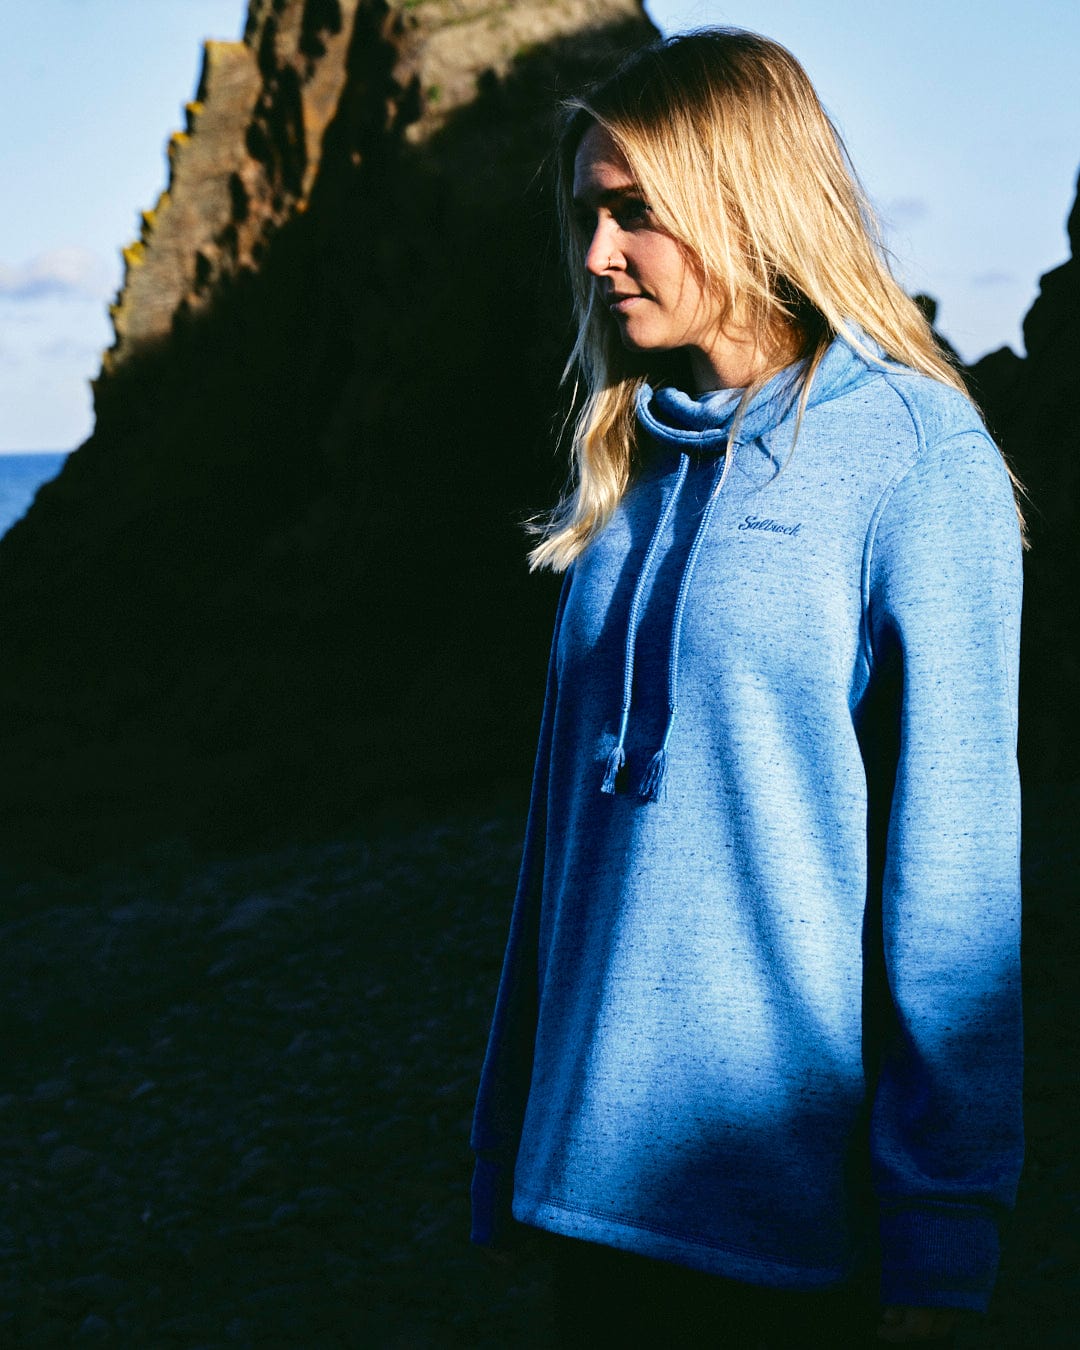 A chic woman wearing the Saltrock Harper - Womens Longline Pop Sweat - Light Blue hoodie standing in front of rocks.